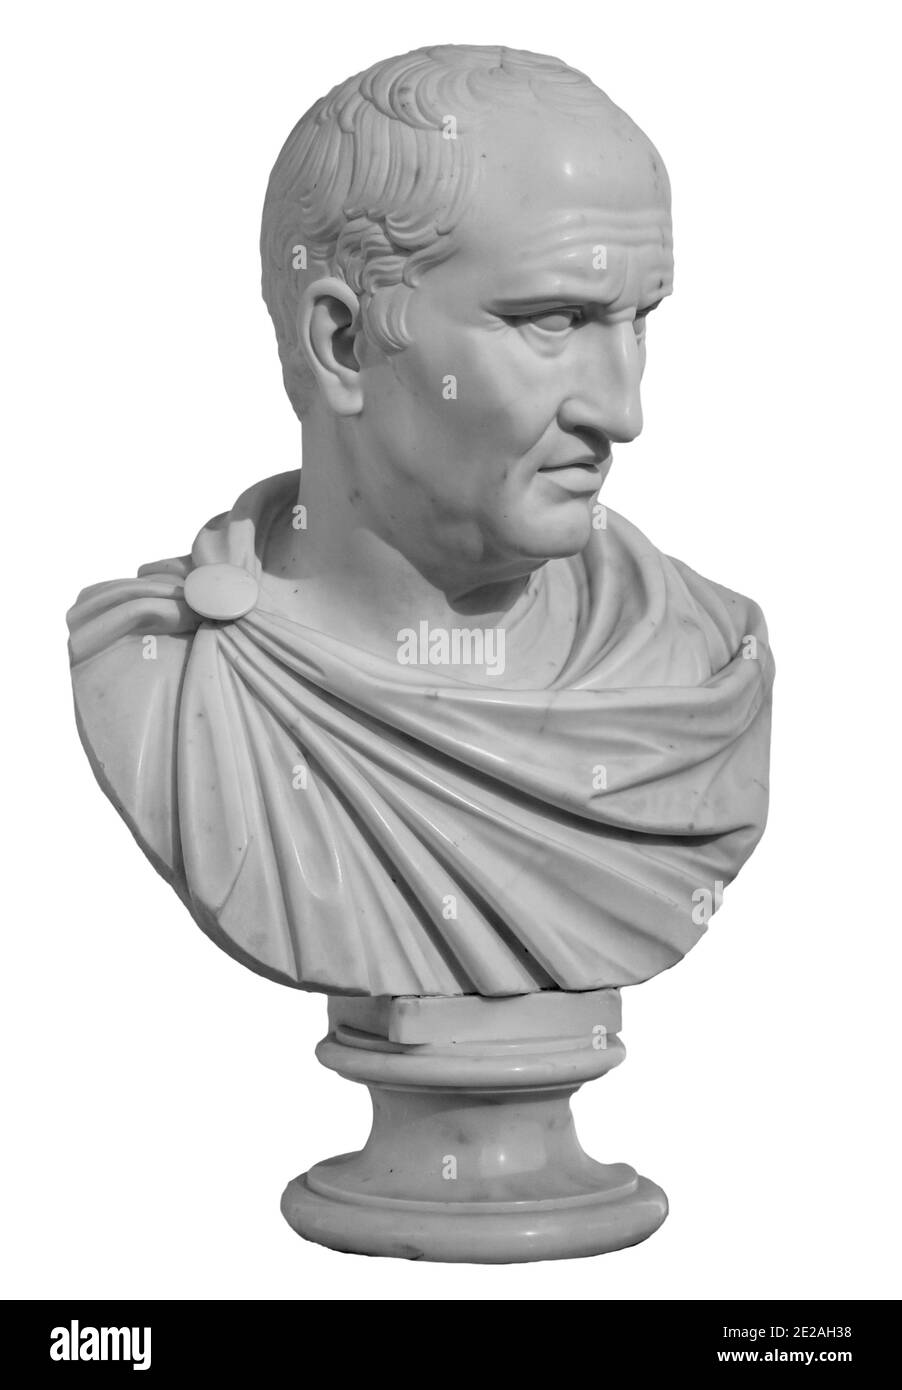 Ancien buste de sculpture en marbre blanc de Cicero le politicien, le philosophe et l'orateur vécut dans la Rome antique Banque D'Images